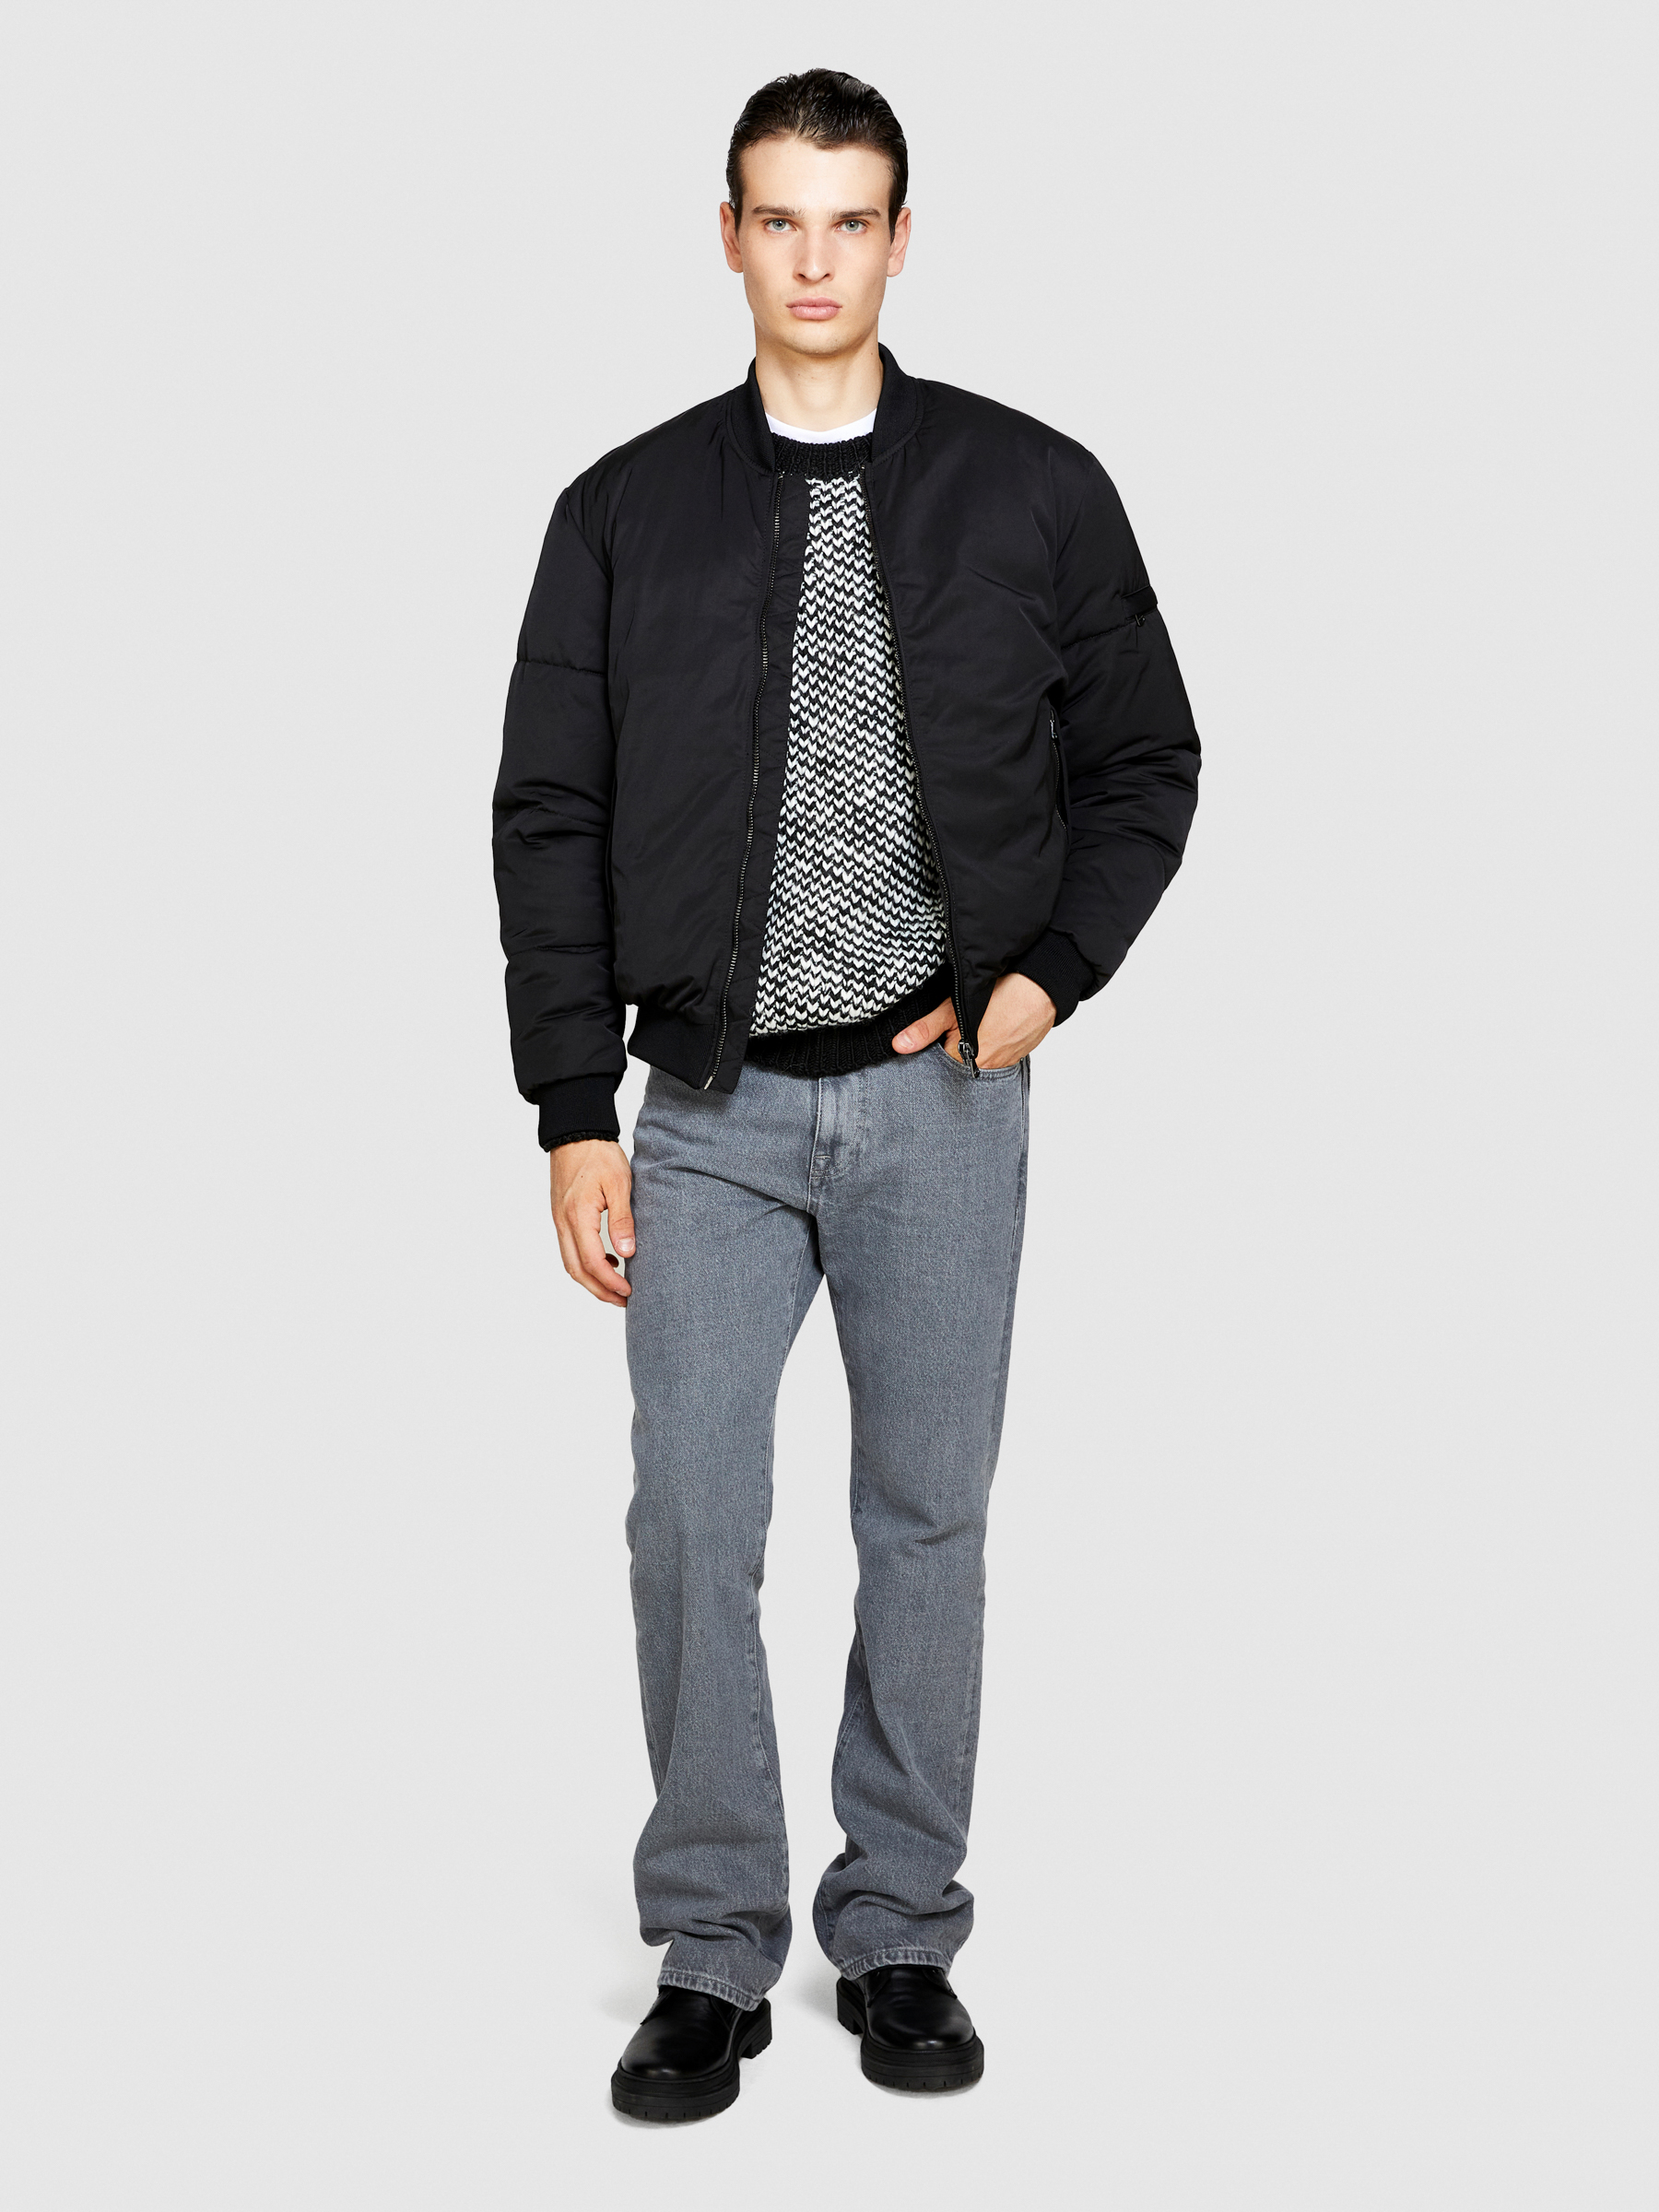 Sisley - Two-tone Sweater, Man, Black, Size: XL